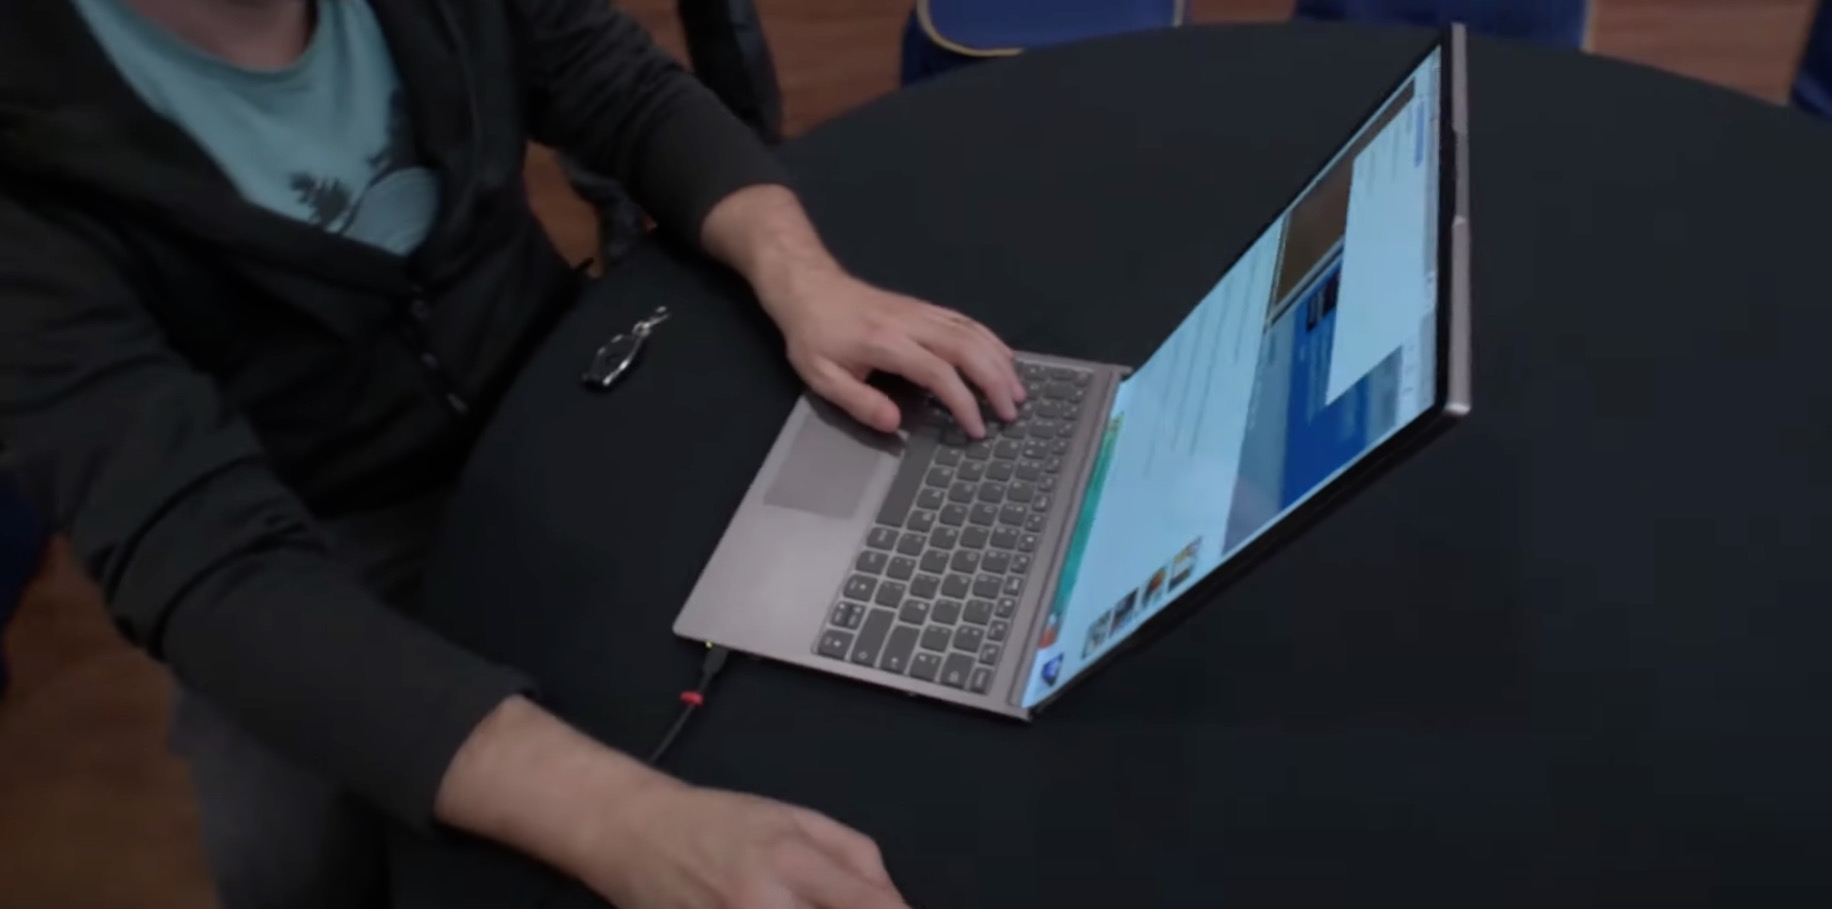 Ce PC portable Lenovo peut agrandir son écran en quelques instants, et c'est fou